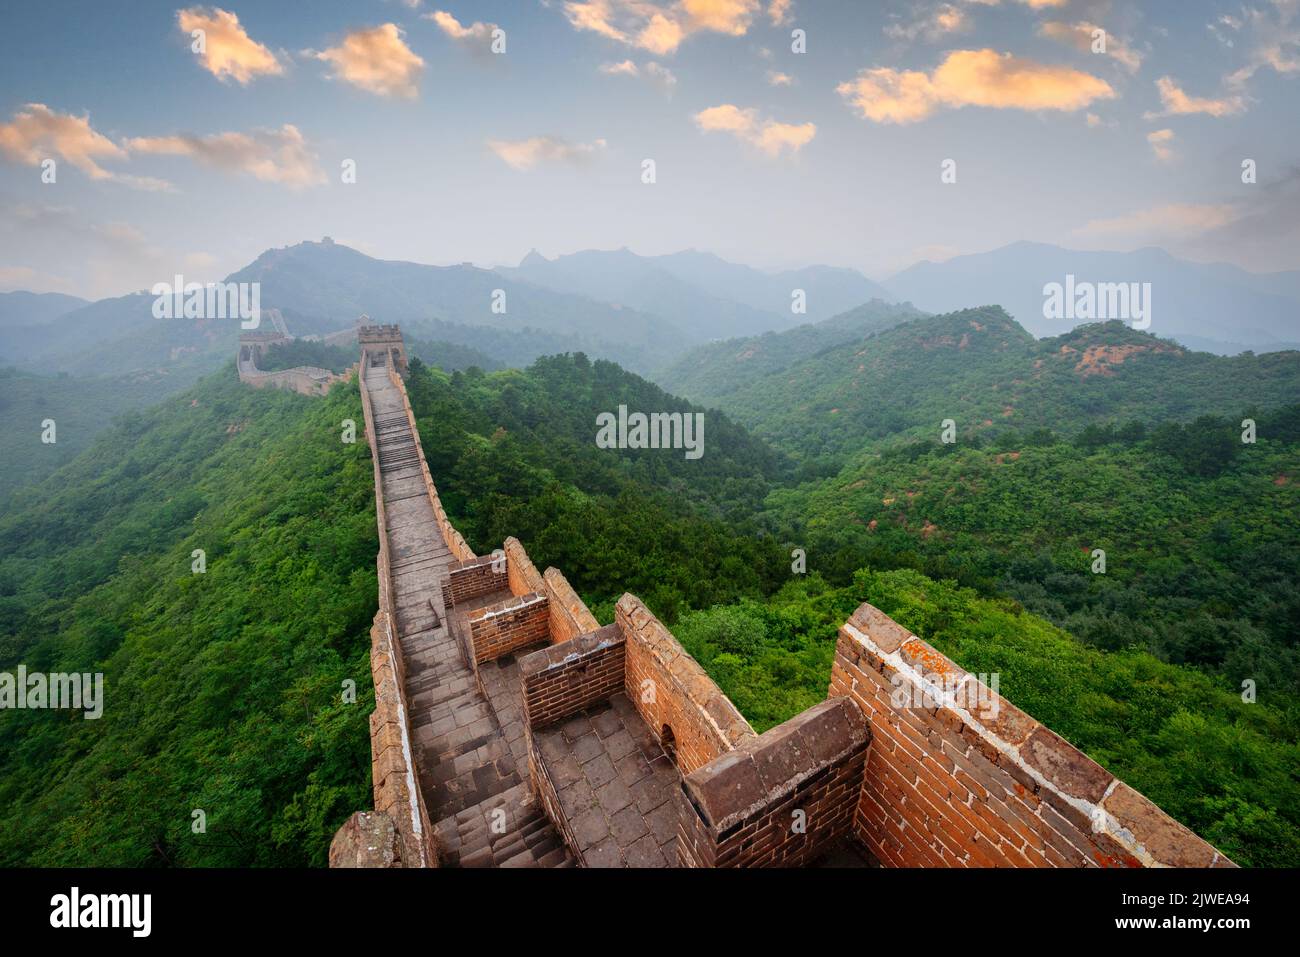 Great Wall of China at the Jinshanling section at dusk. Stock Photo